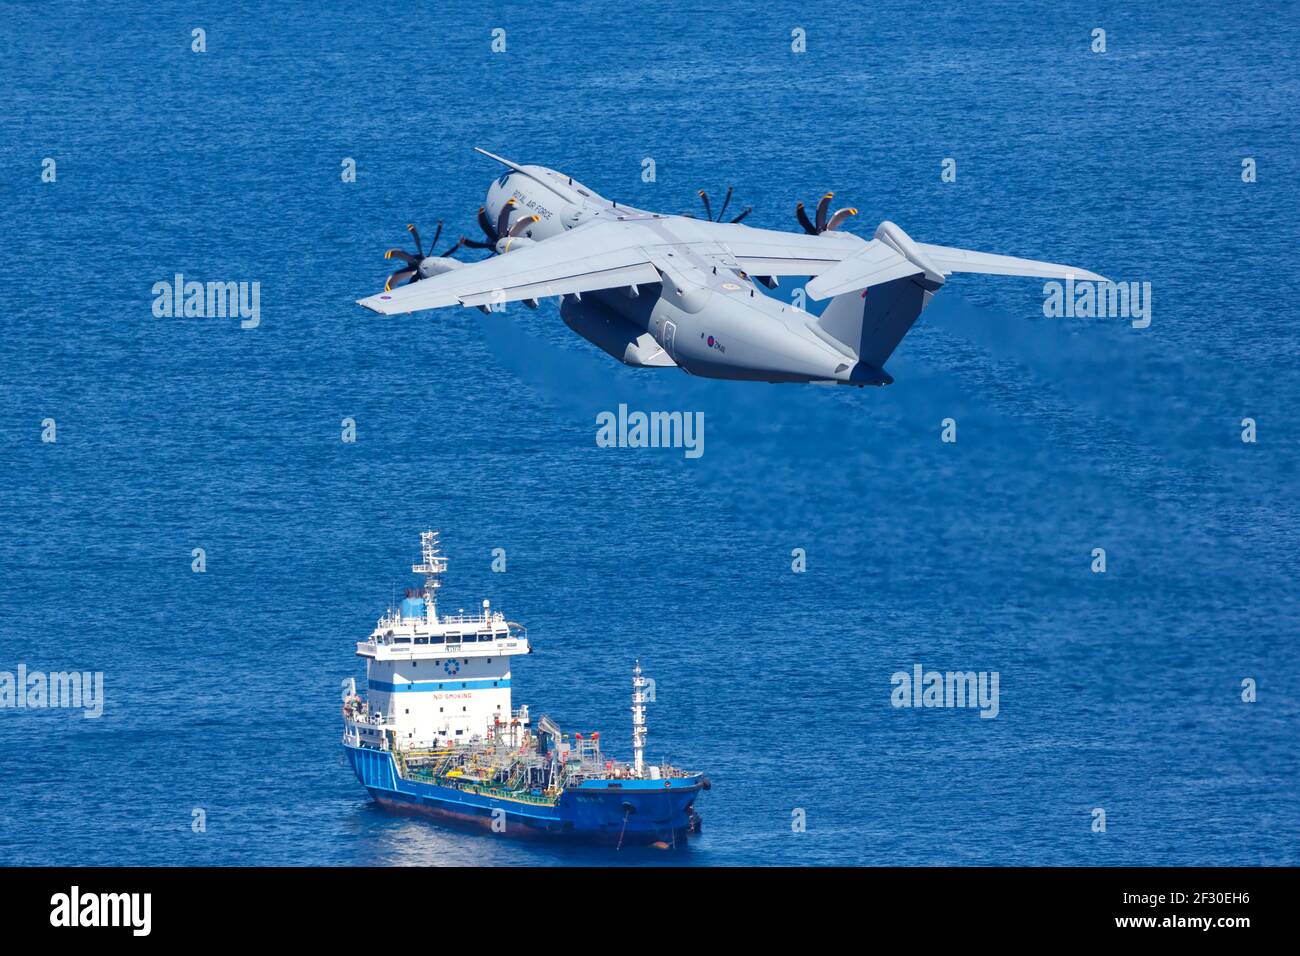 Gibilterra - 29 luglio 2018: Aereo Airbus A400M all'aeroporto di Gibilterra (GIB). Foto Stock